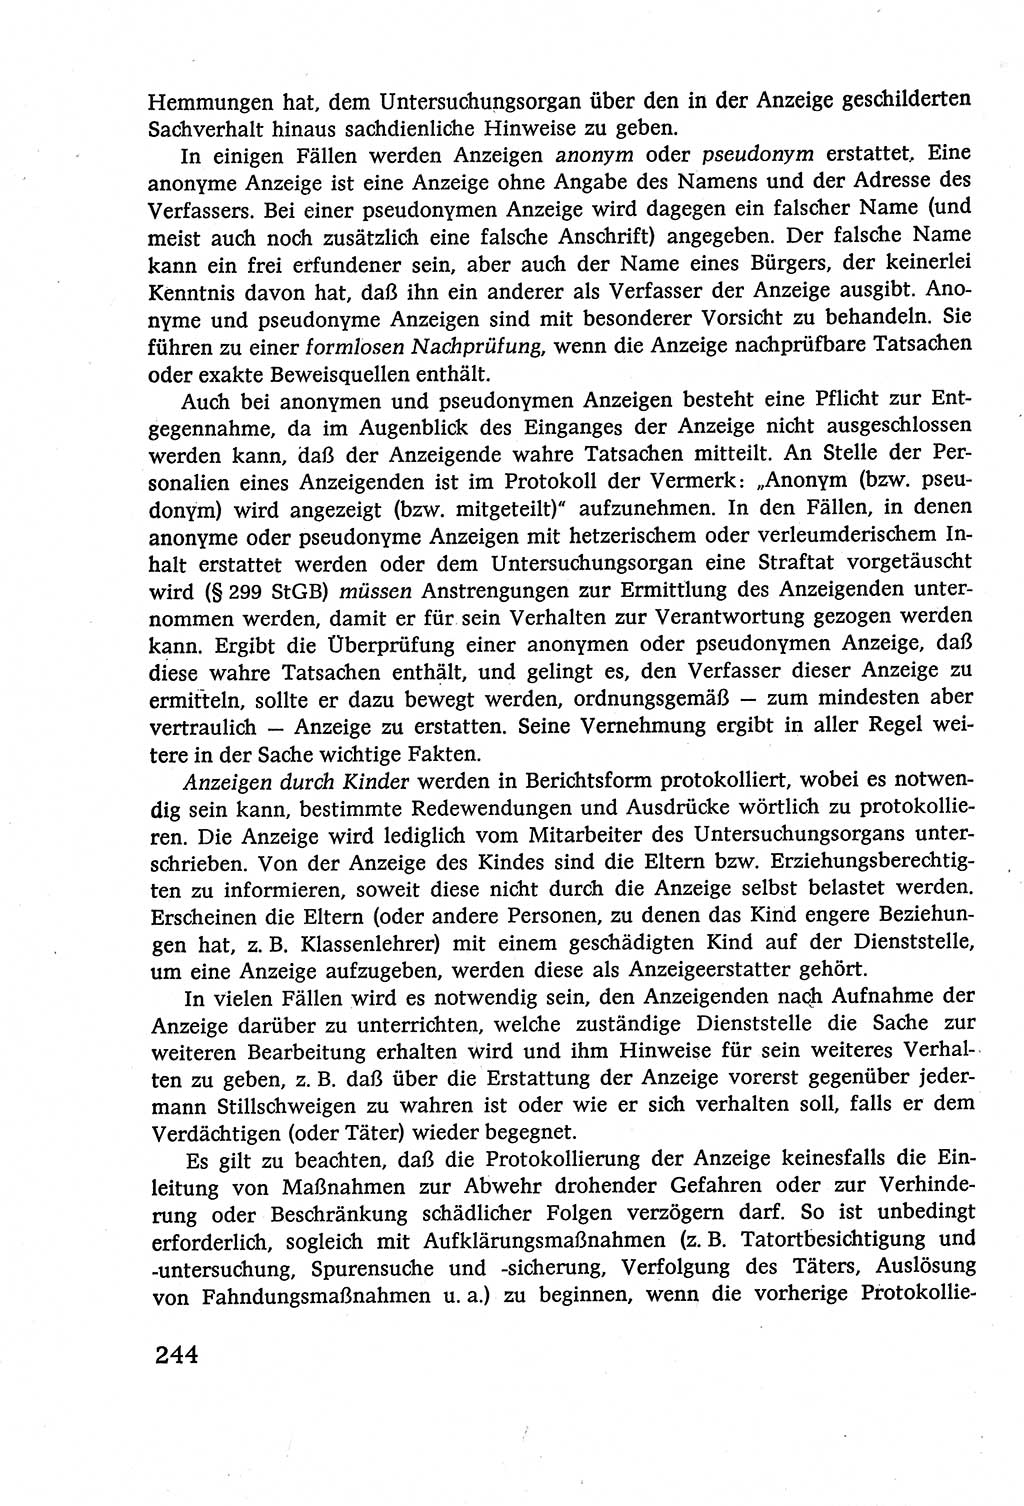 Strafverfahrensrecht [Deutsche Demokratische Republik (DDR)], Lehrbuch 1977, Seite 244 (Strafverf.-R. DDR Lb. 1977, S. 244)